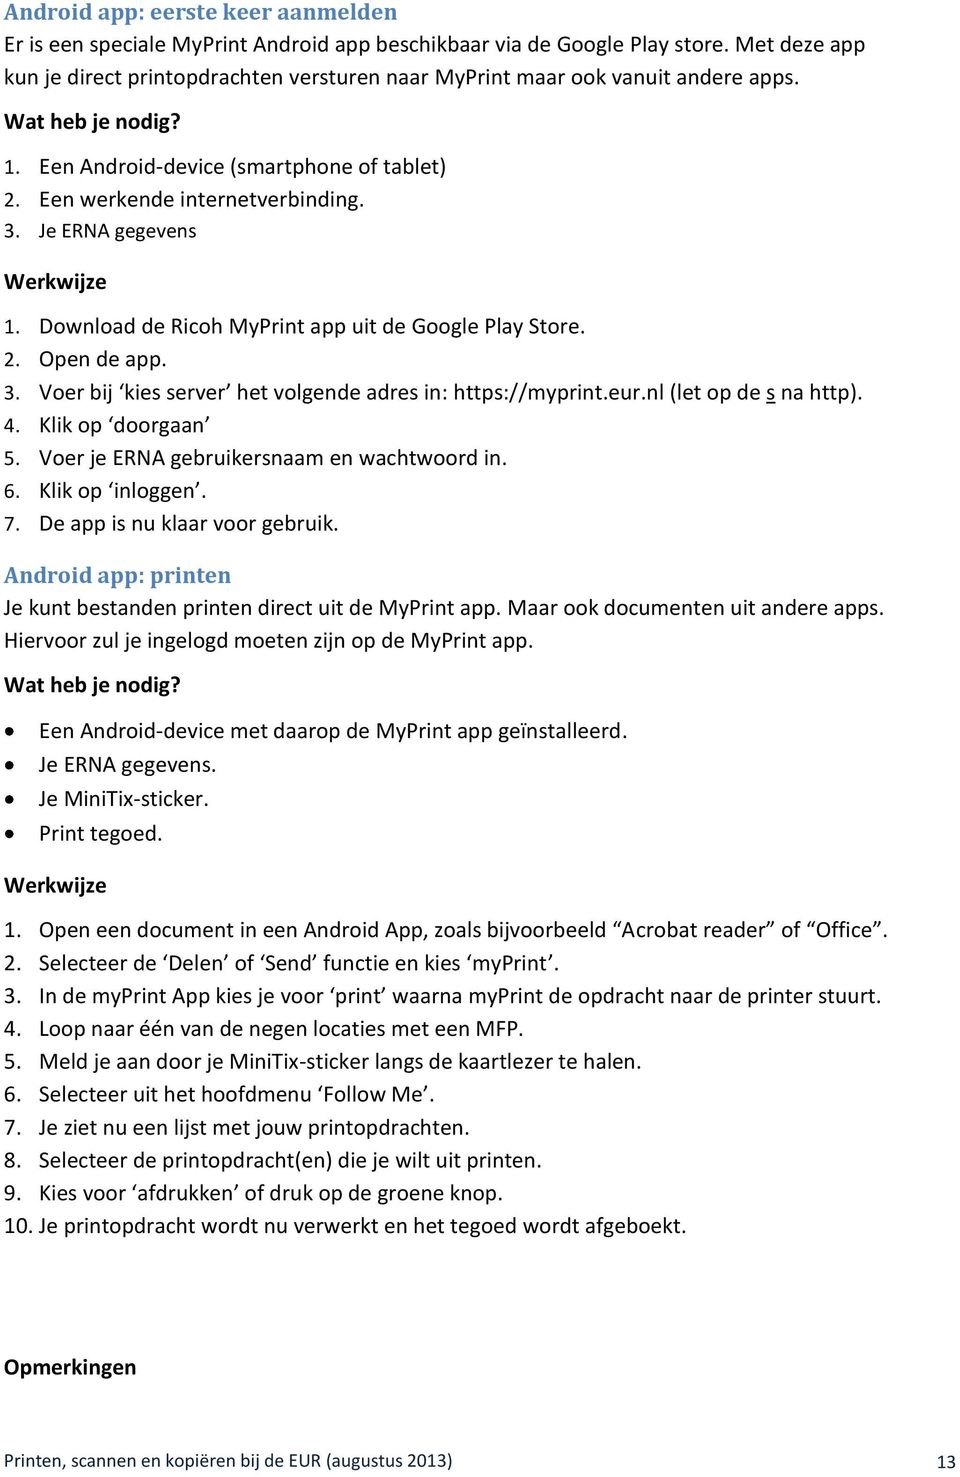 Download de Ricoh MyPrint app uit de Google Play Store. 2. Open de app. 3. Voer bij kies server het volgende adres in: https://myprint.eur.nl (let op de s na http). 4. Klik op doorgaan 5.